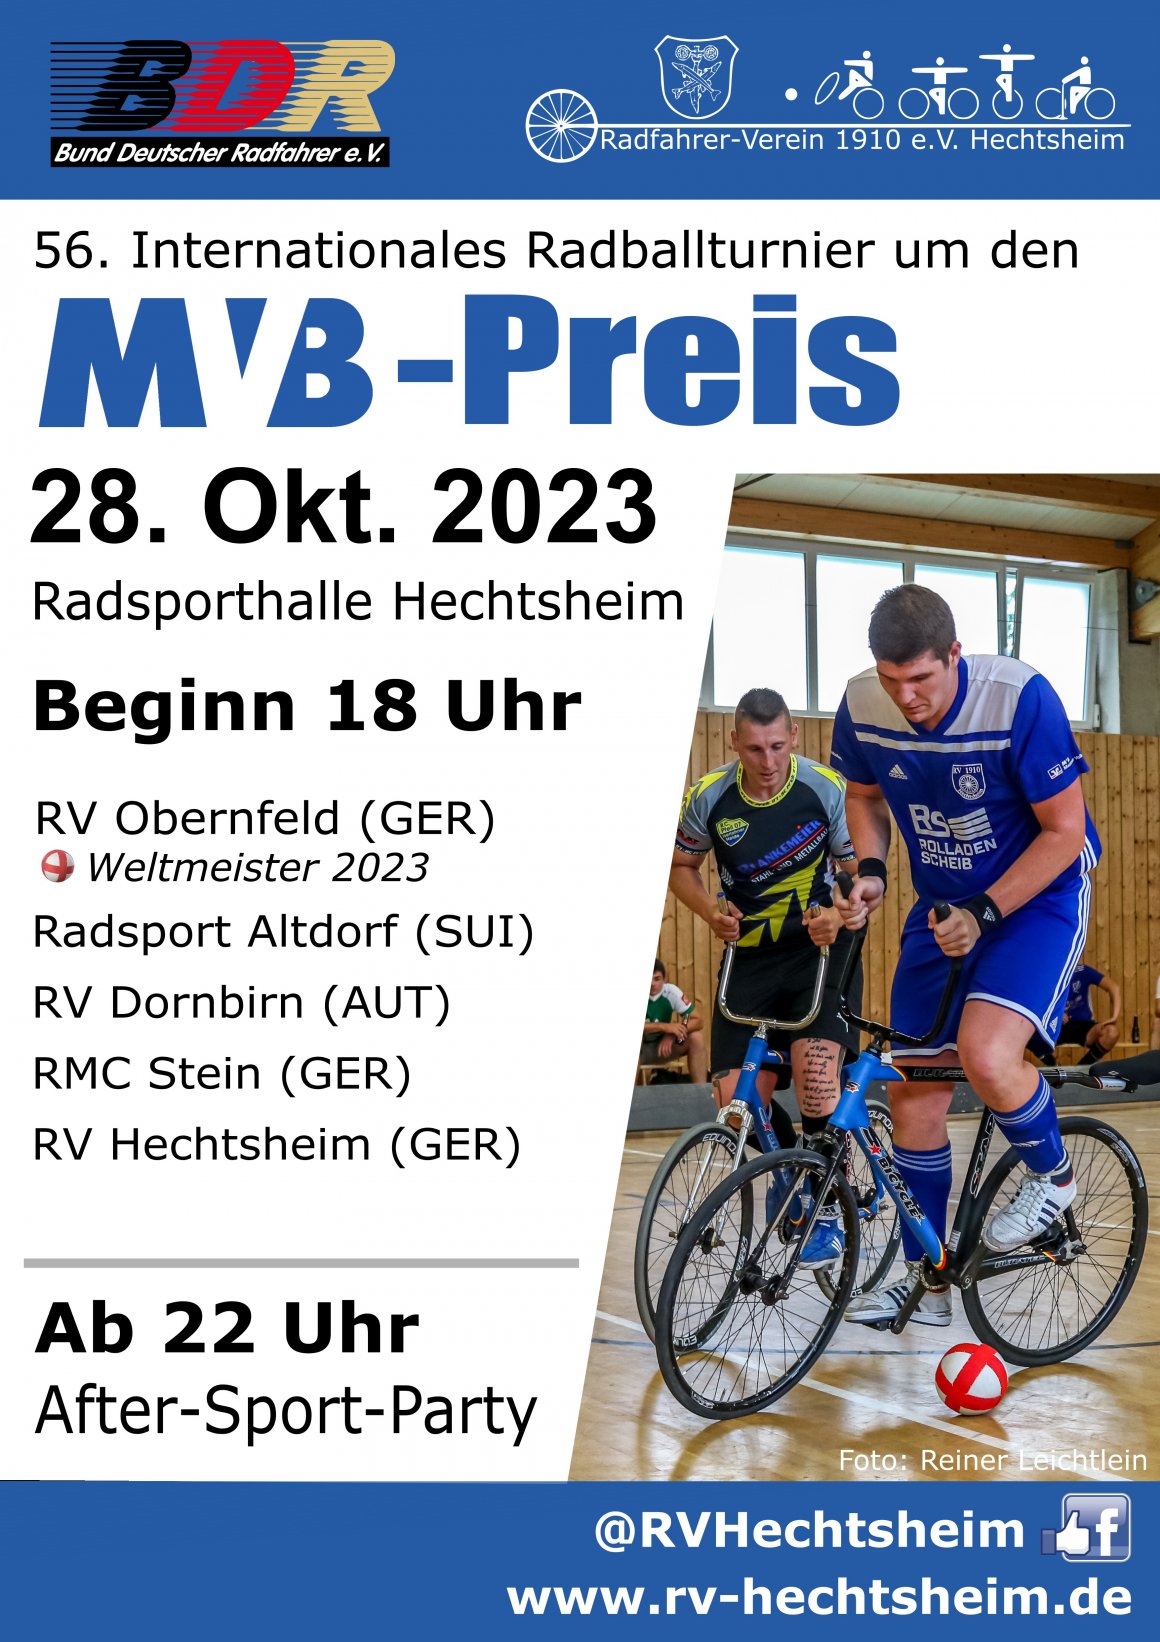 Mehr Weltklasse geht kaum: In Hechtsheim wird am Samstag wieder Radball auf höchstem internationalem Niveau gespielt.